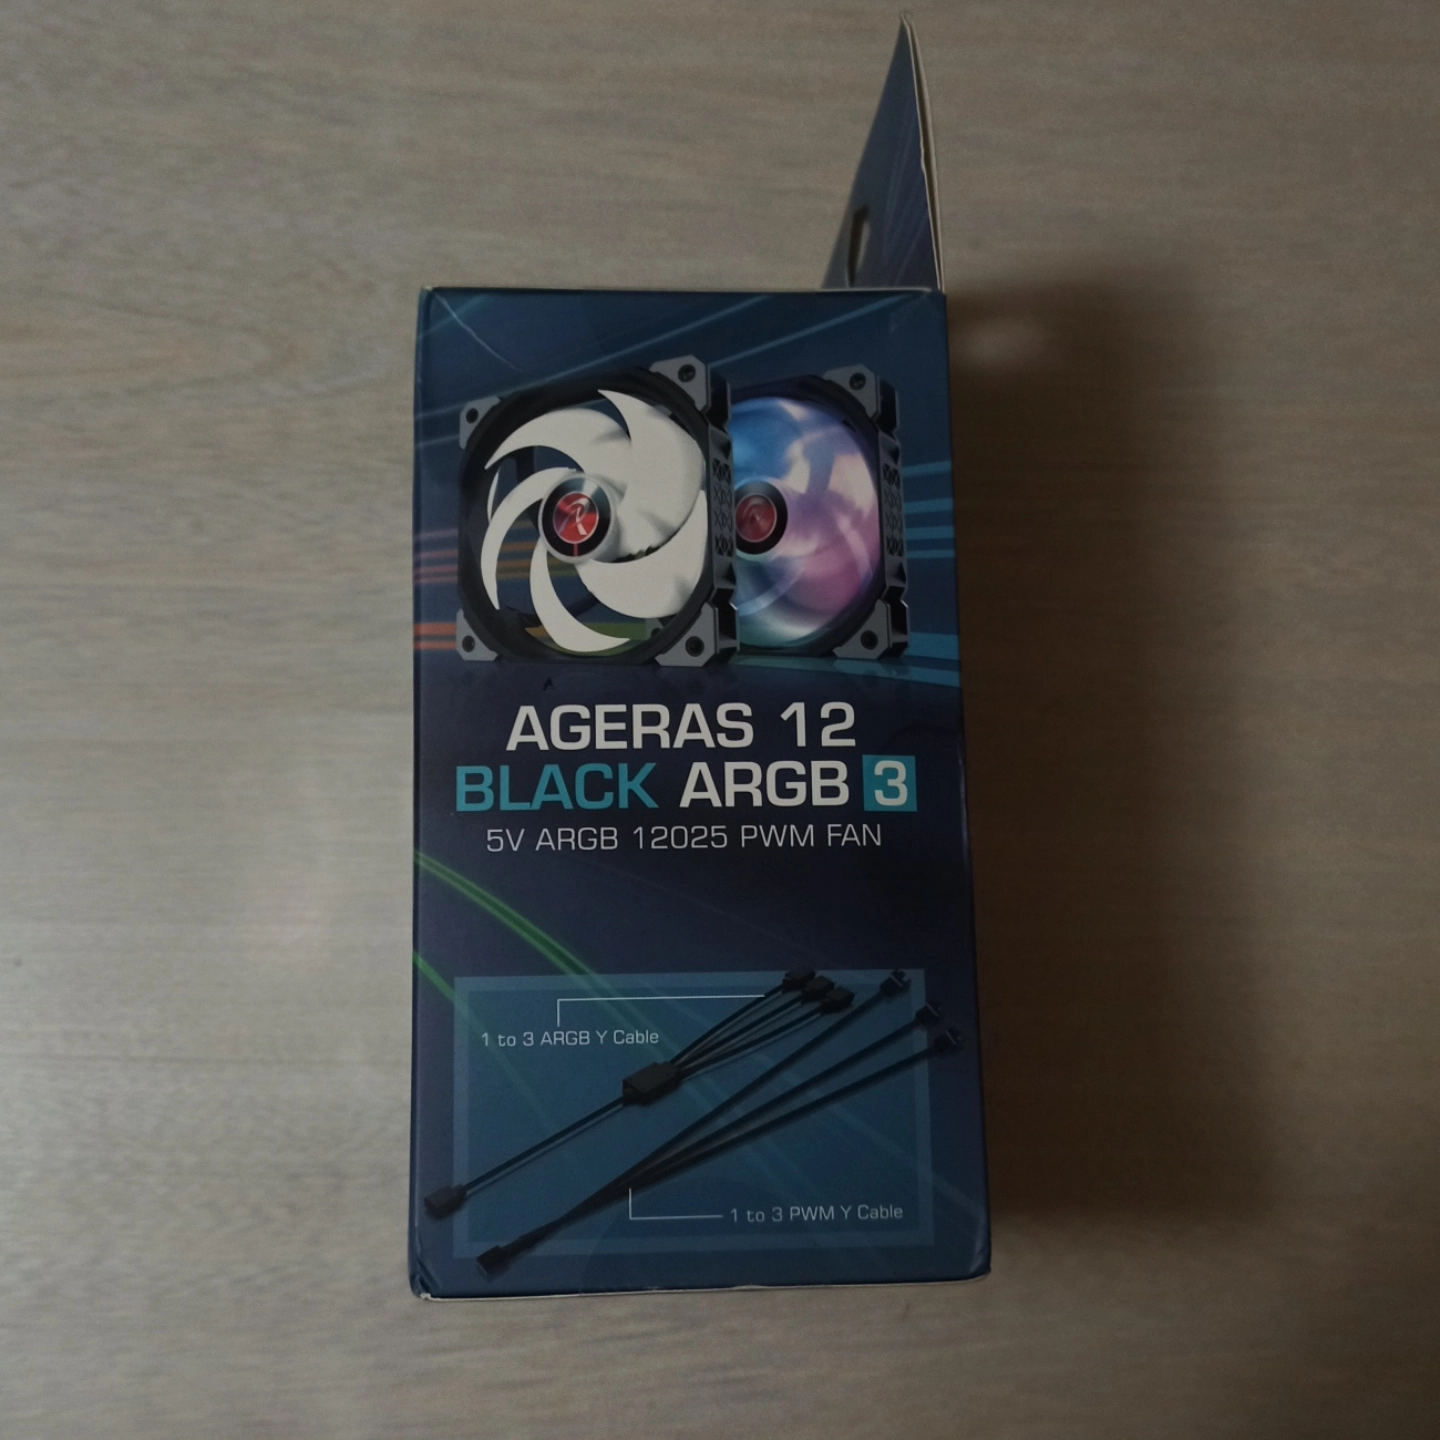 Raijintek Ageras 12 Black ARGB 3 — Review en Español